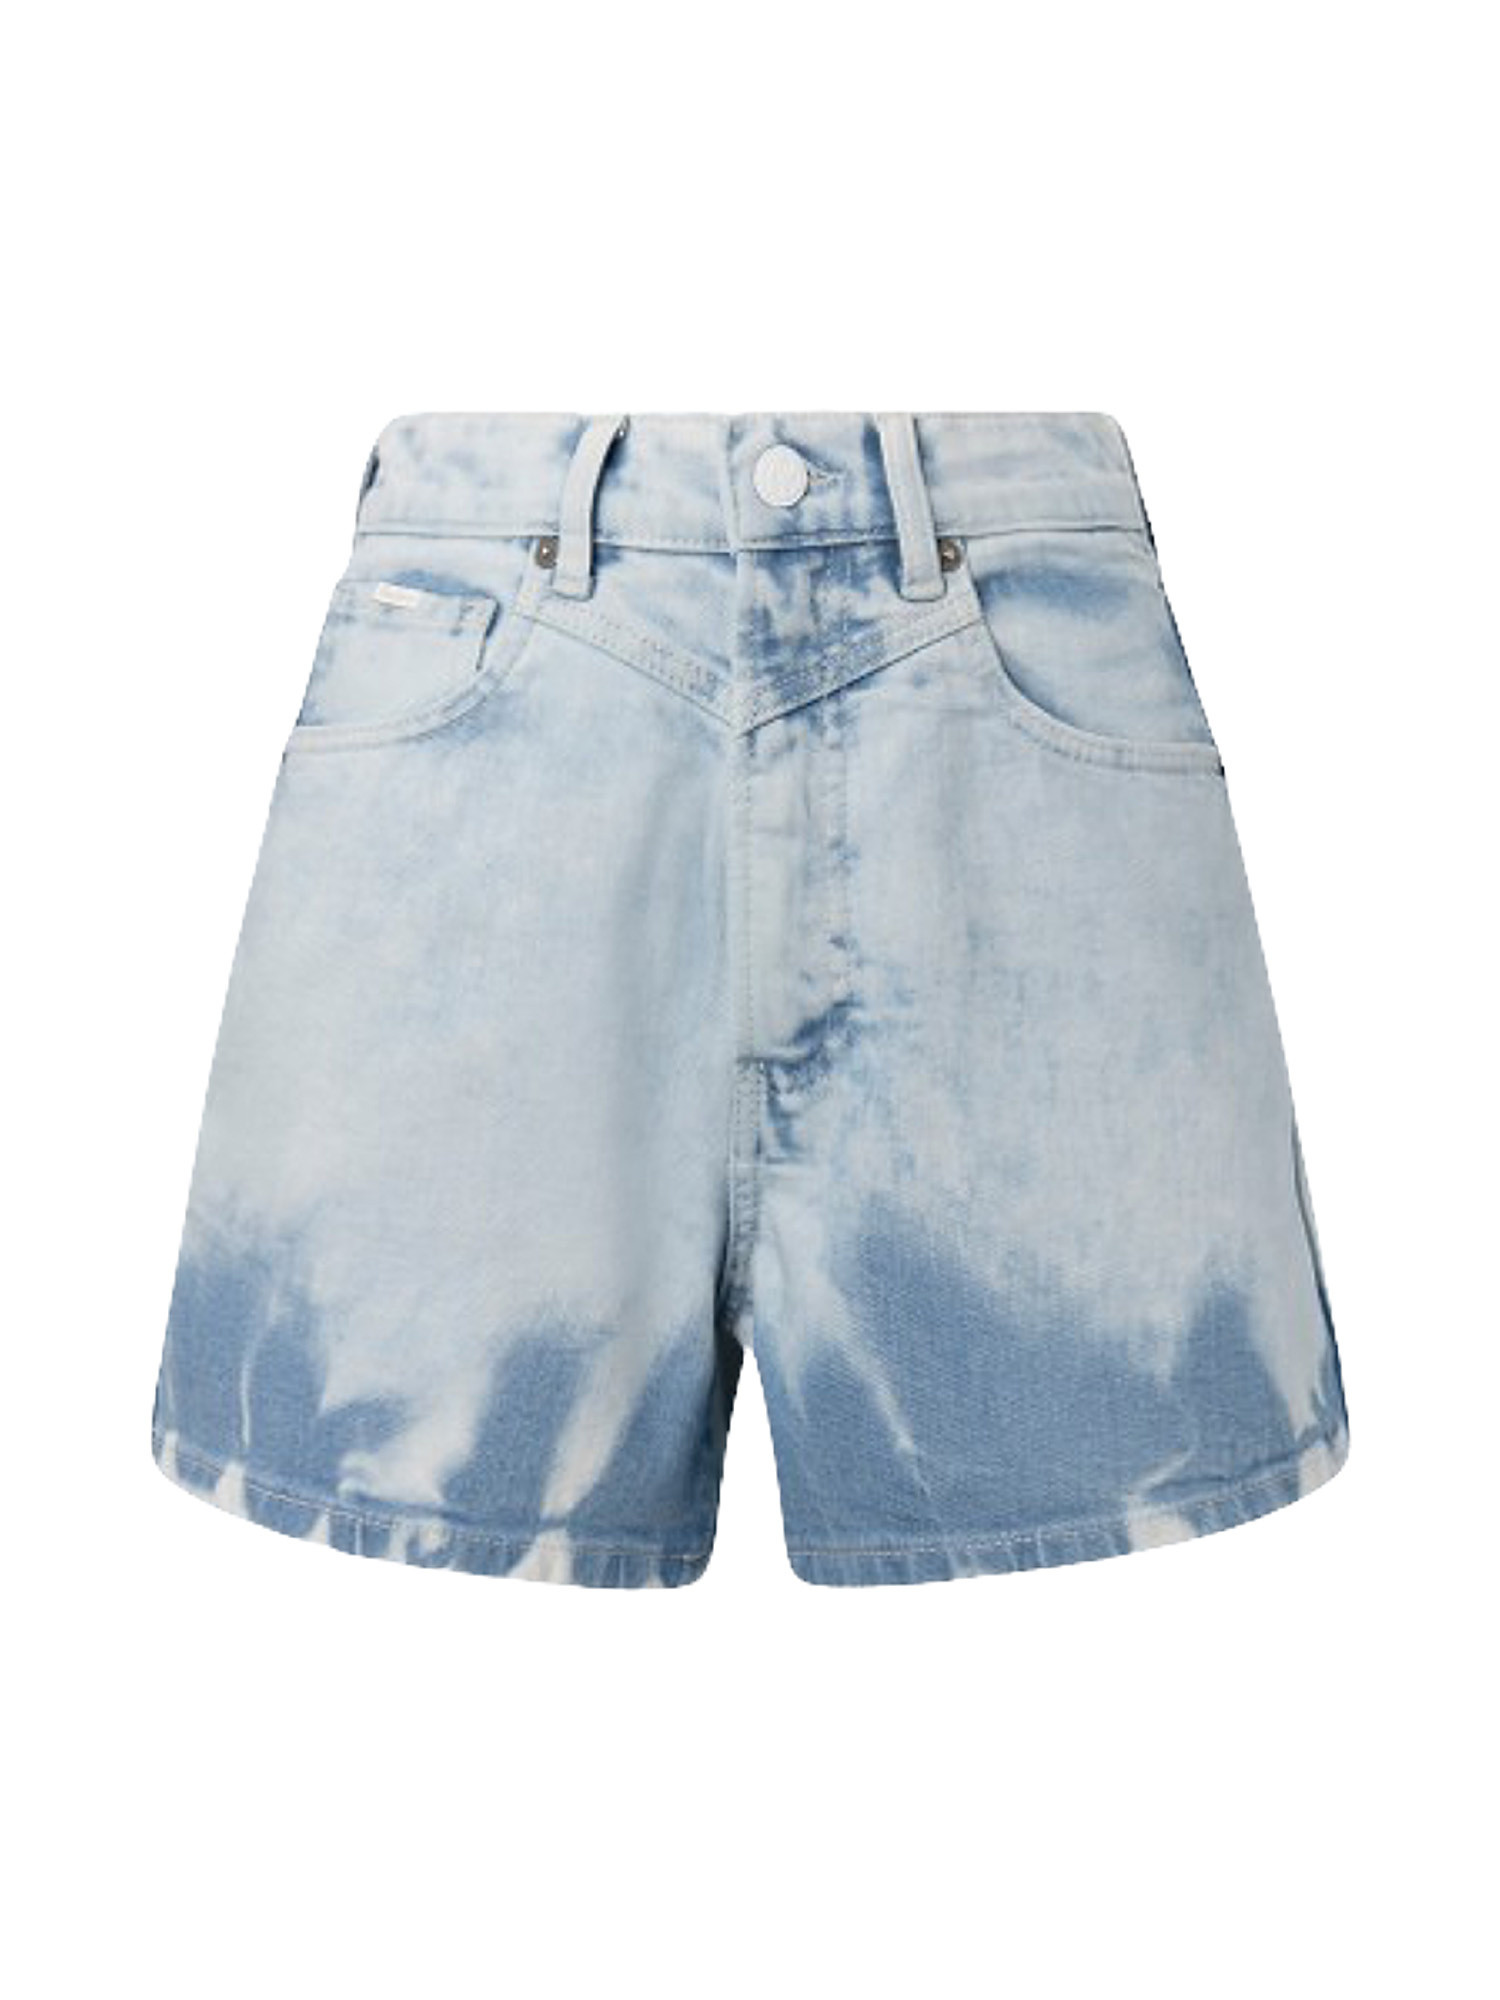 Shorts in denim rachel  tieye, Denim, large